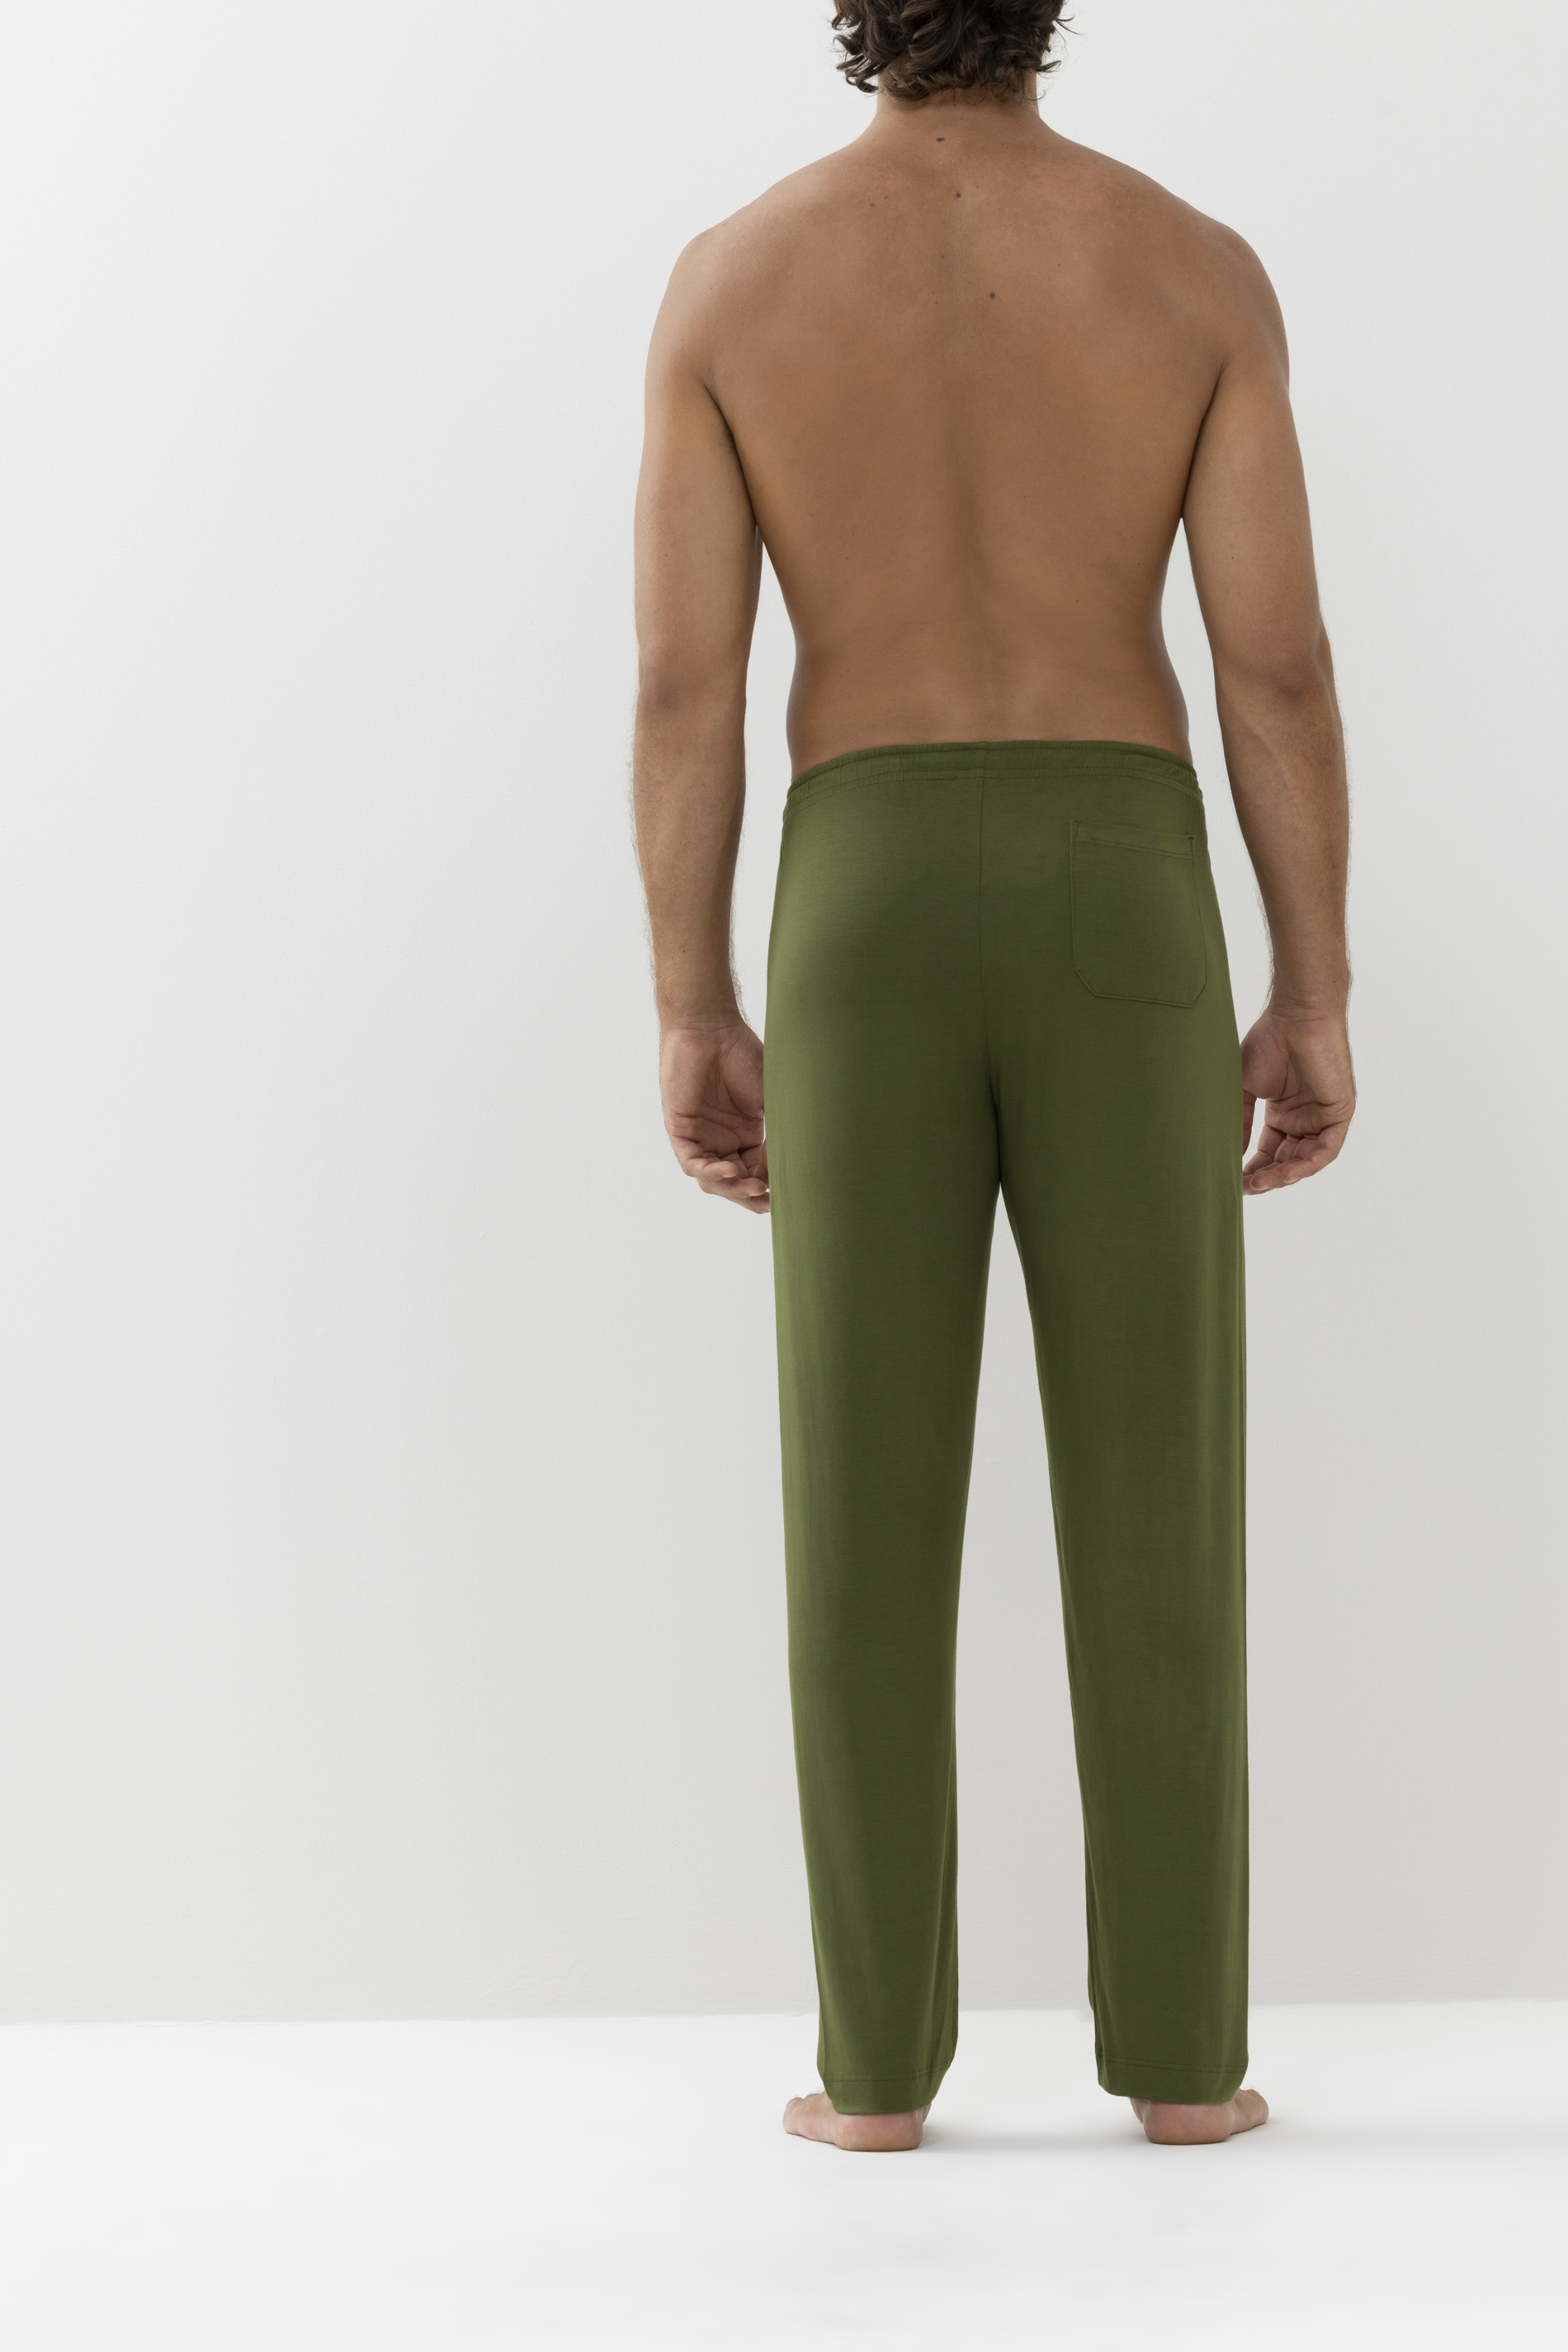 Long pants Serie Jefferson Modal Rear View | mey®